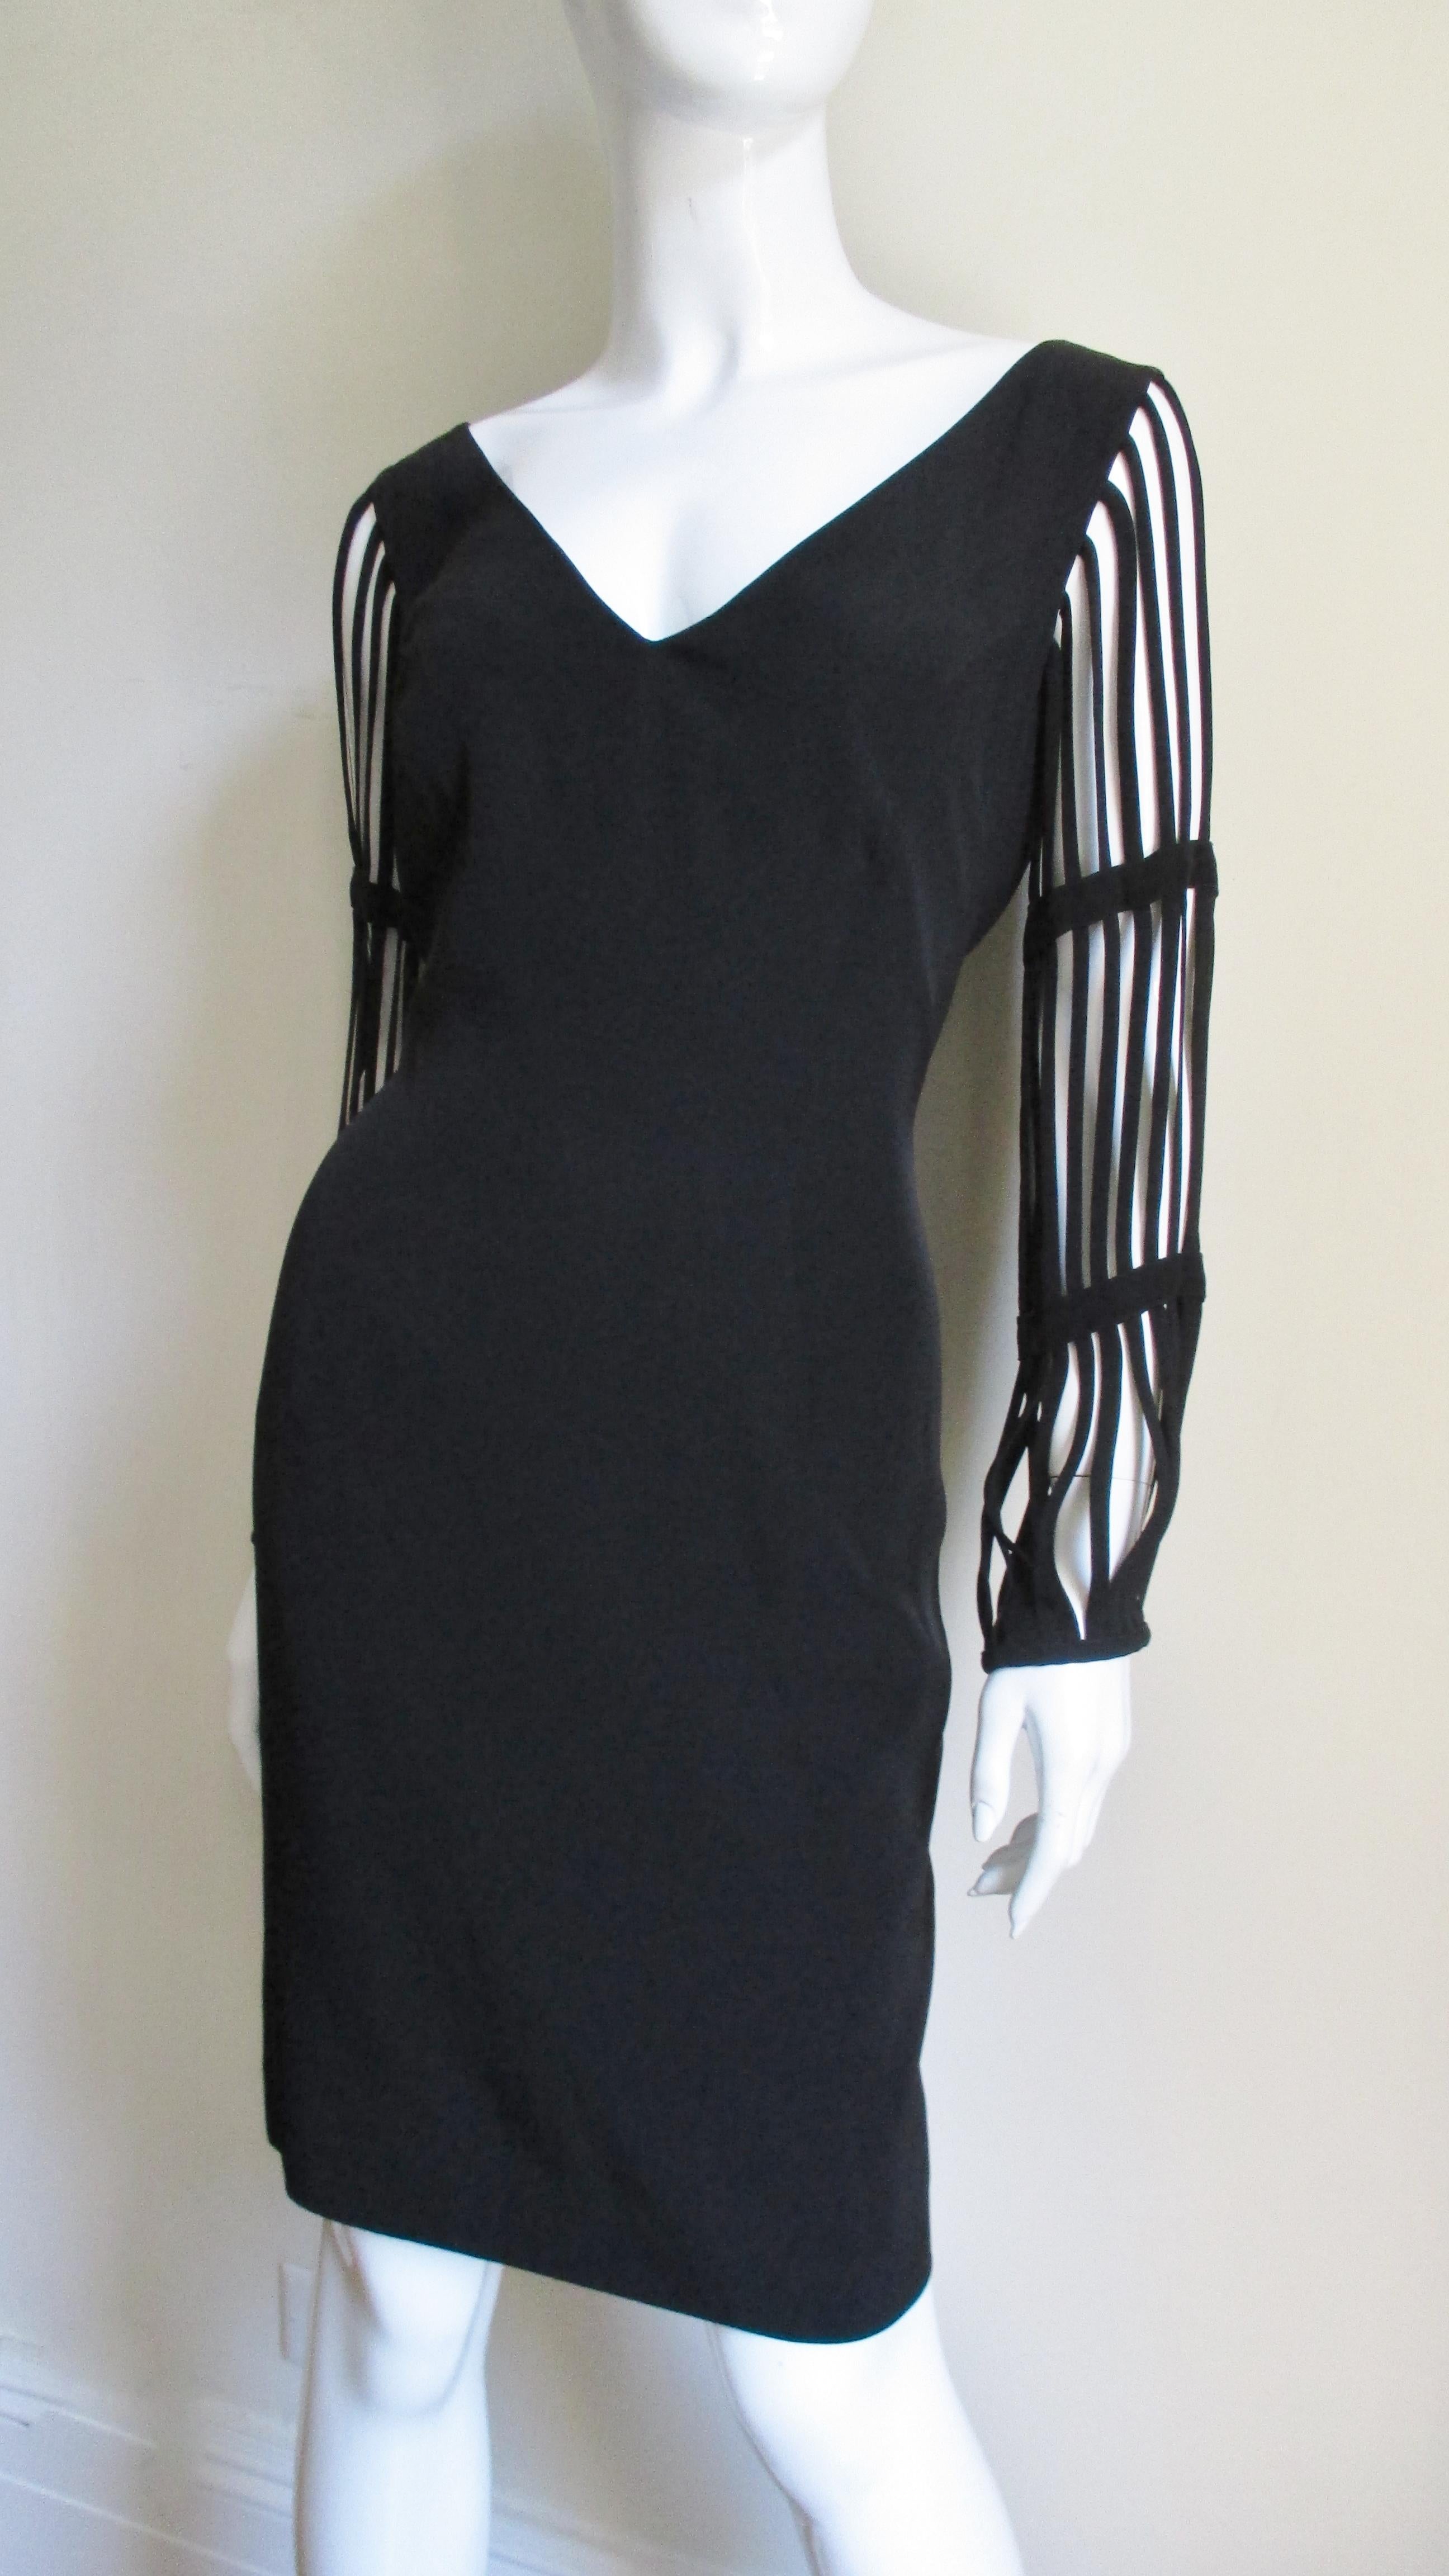 Une superbe petite robe noire de Sophie Sitbon, Paris.  Il s'agit d'une robe simple à encolure en V, semi-fixe, avec de superbes manches en cage composées de bandes de tissu finies au niveau des bras.  L'effet est fabuleux.  Il est entièrement